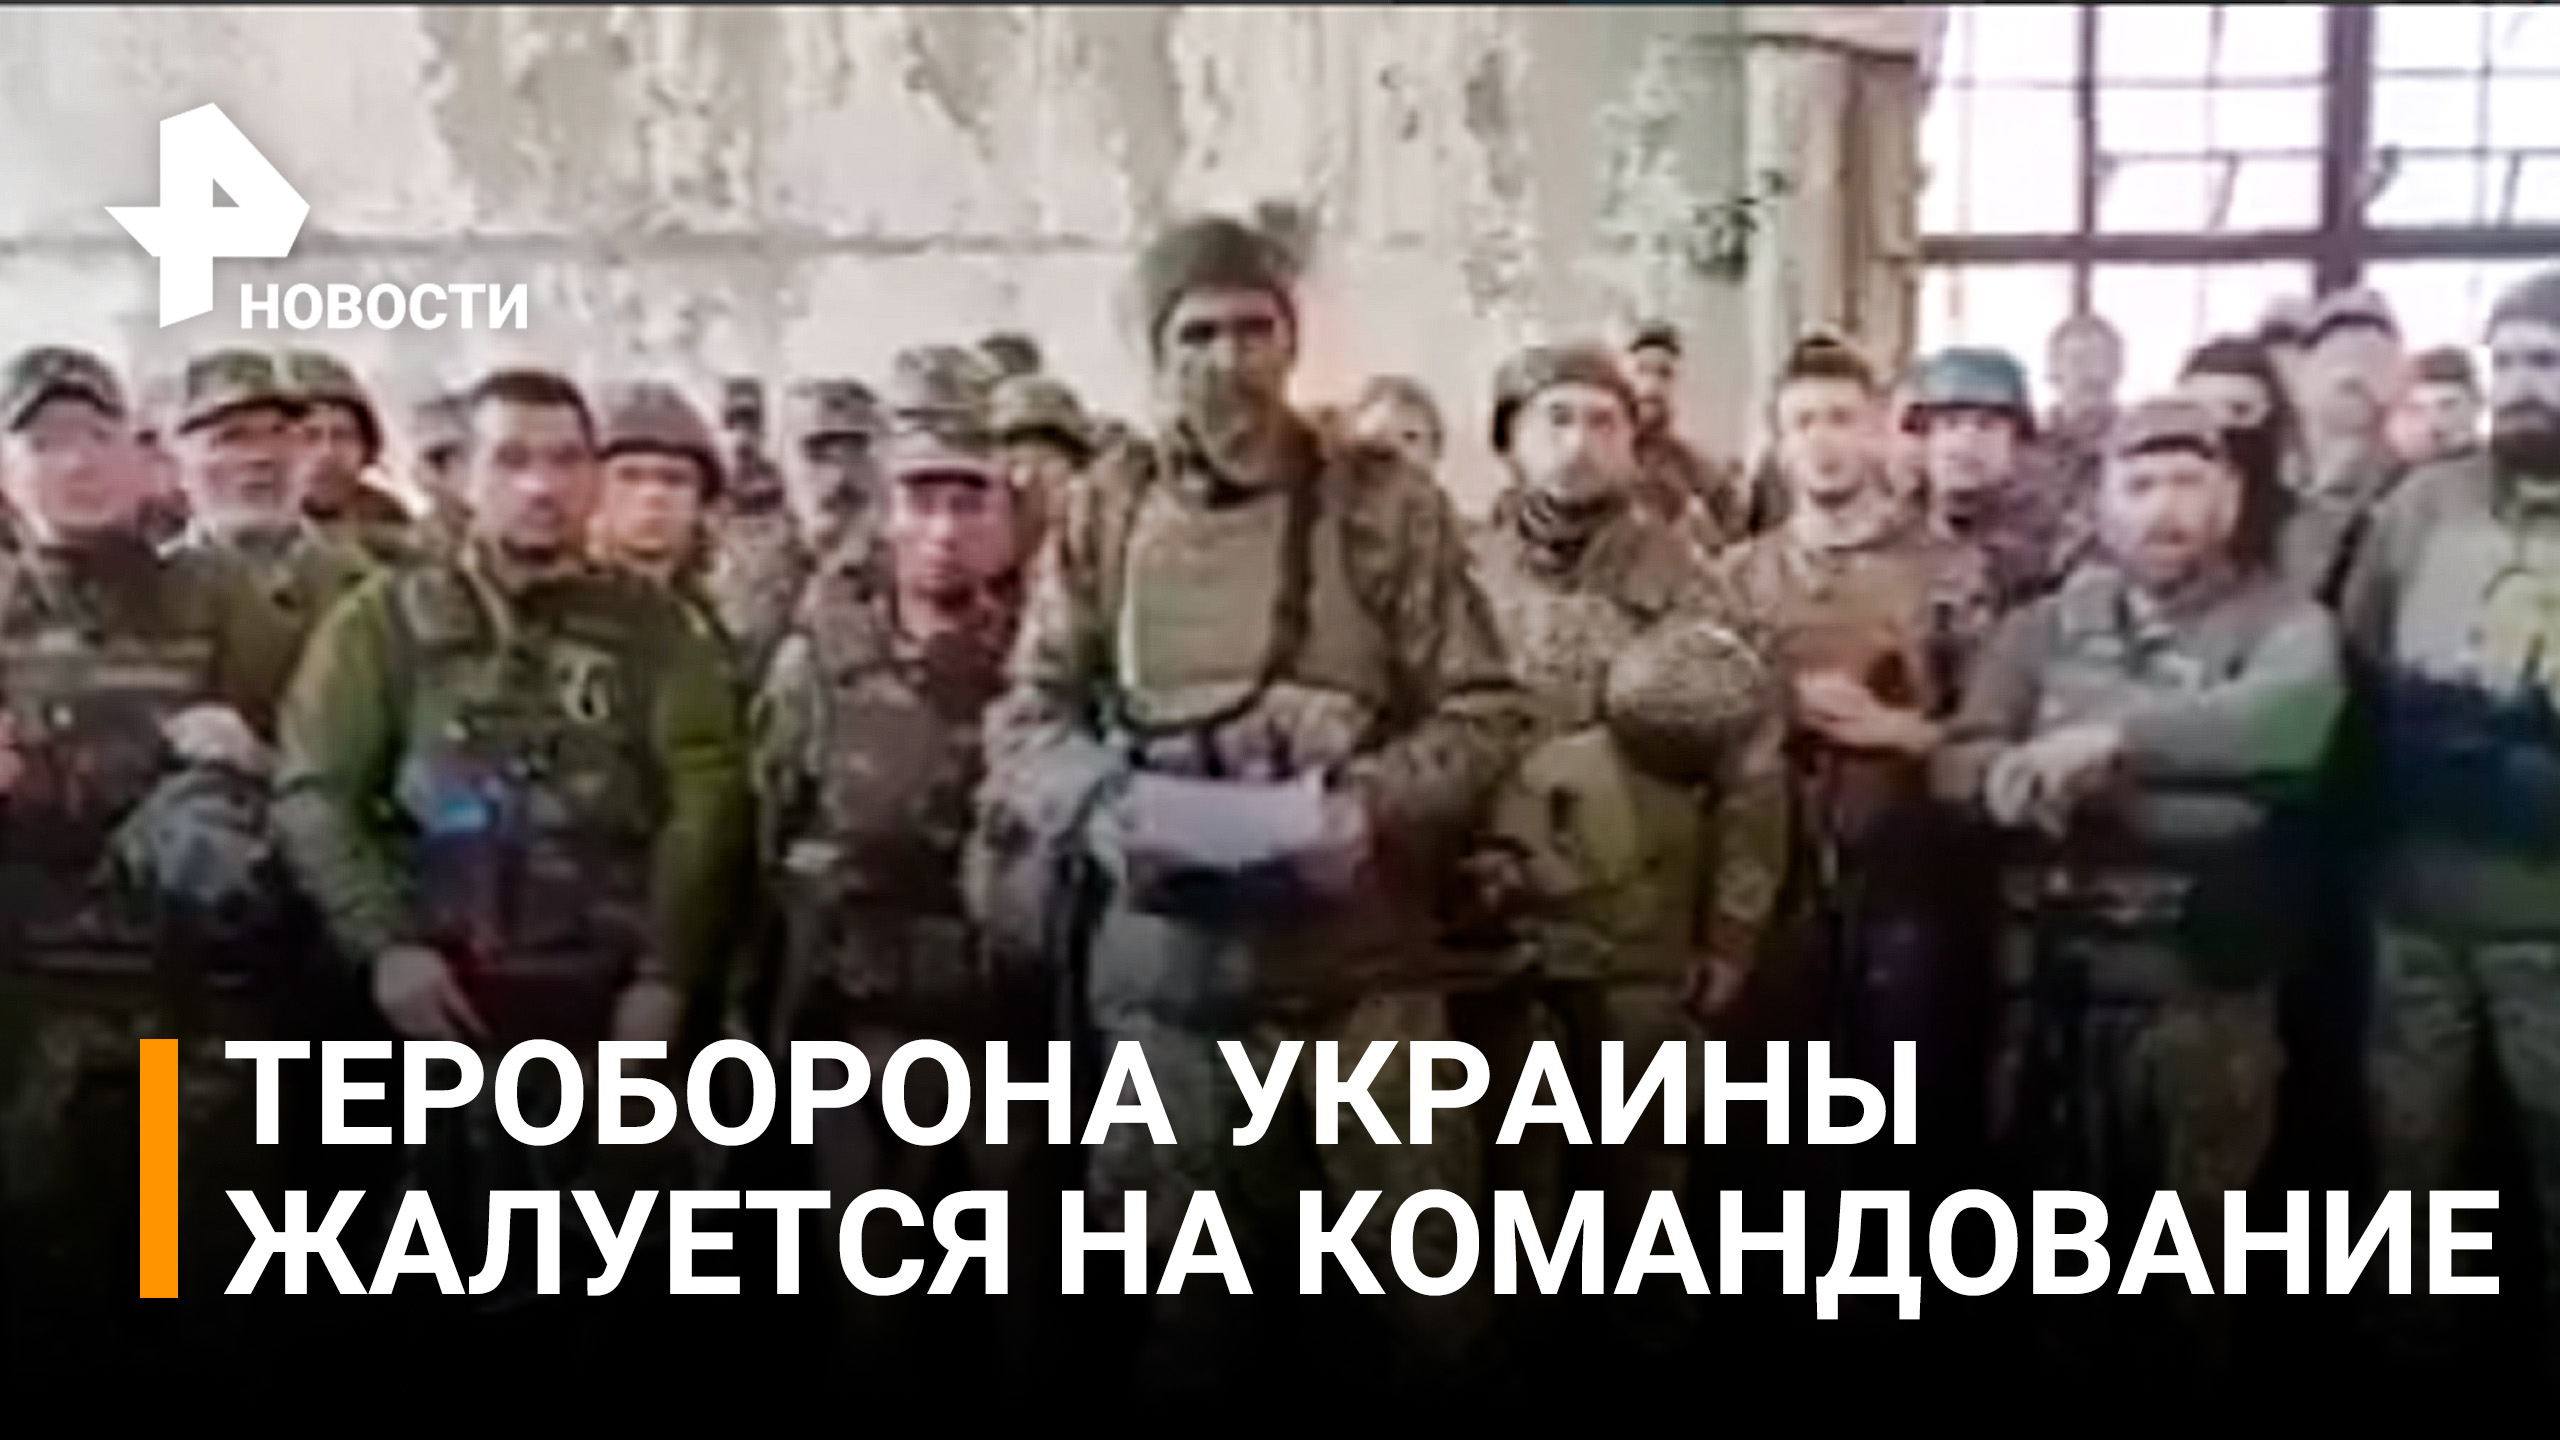 Украинские военные записали обращение с критикой командования / РЕН Новости